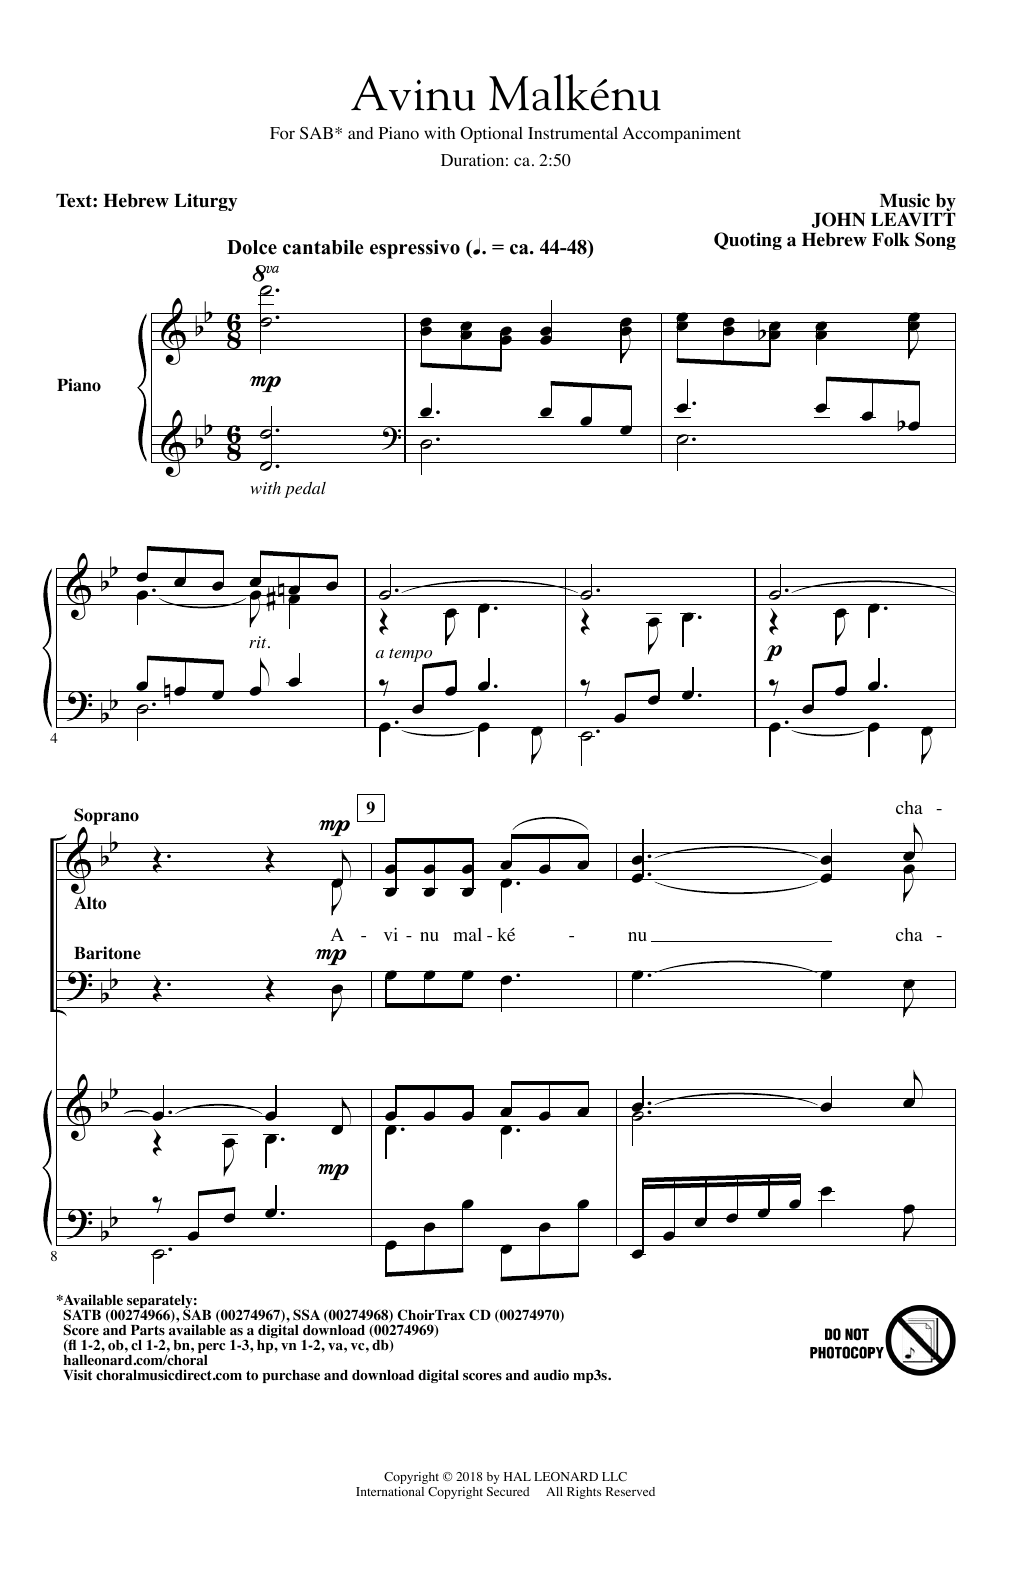 John Leavitt Avinu Malkenu Sheet Music Notes & Chords for SAB - Download or Print PDF